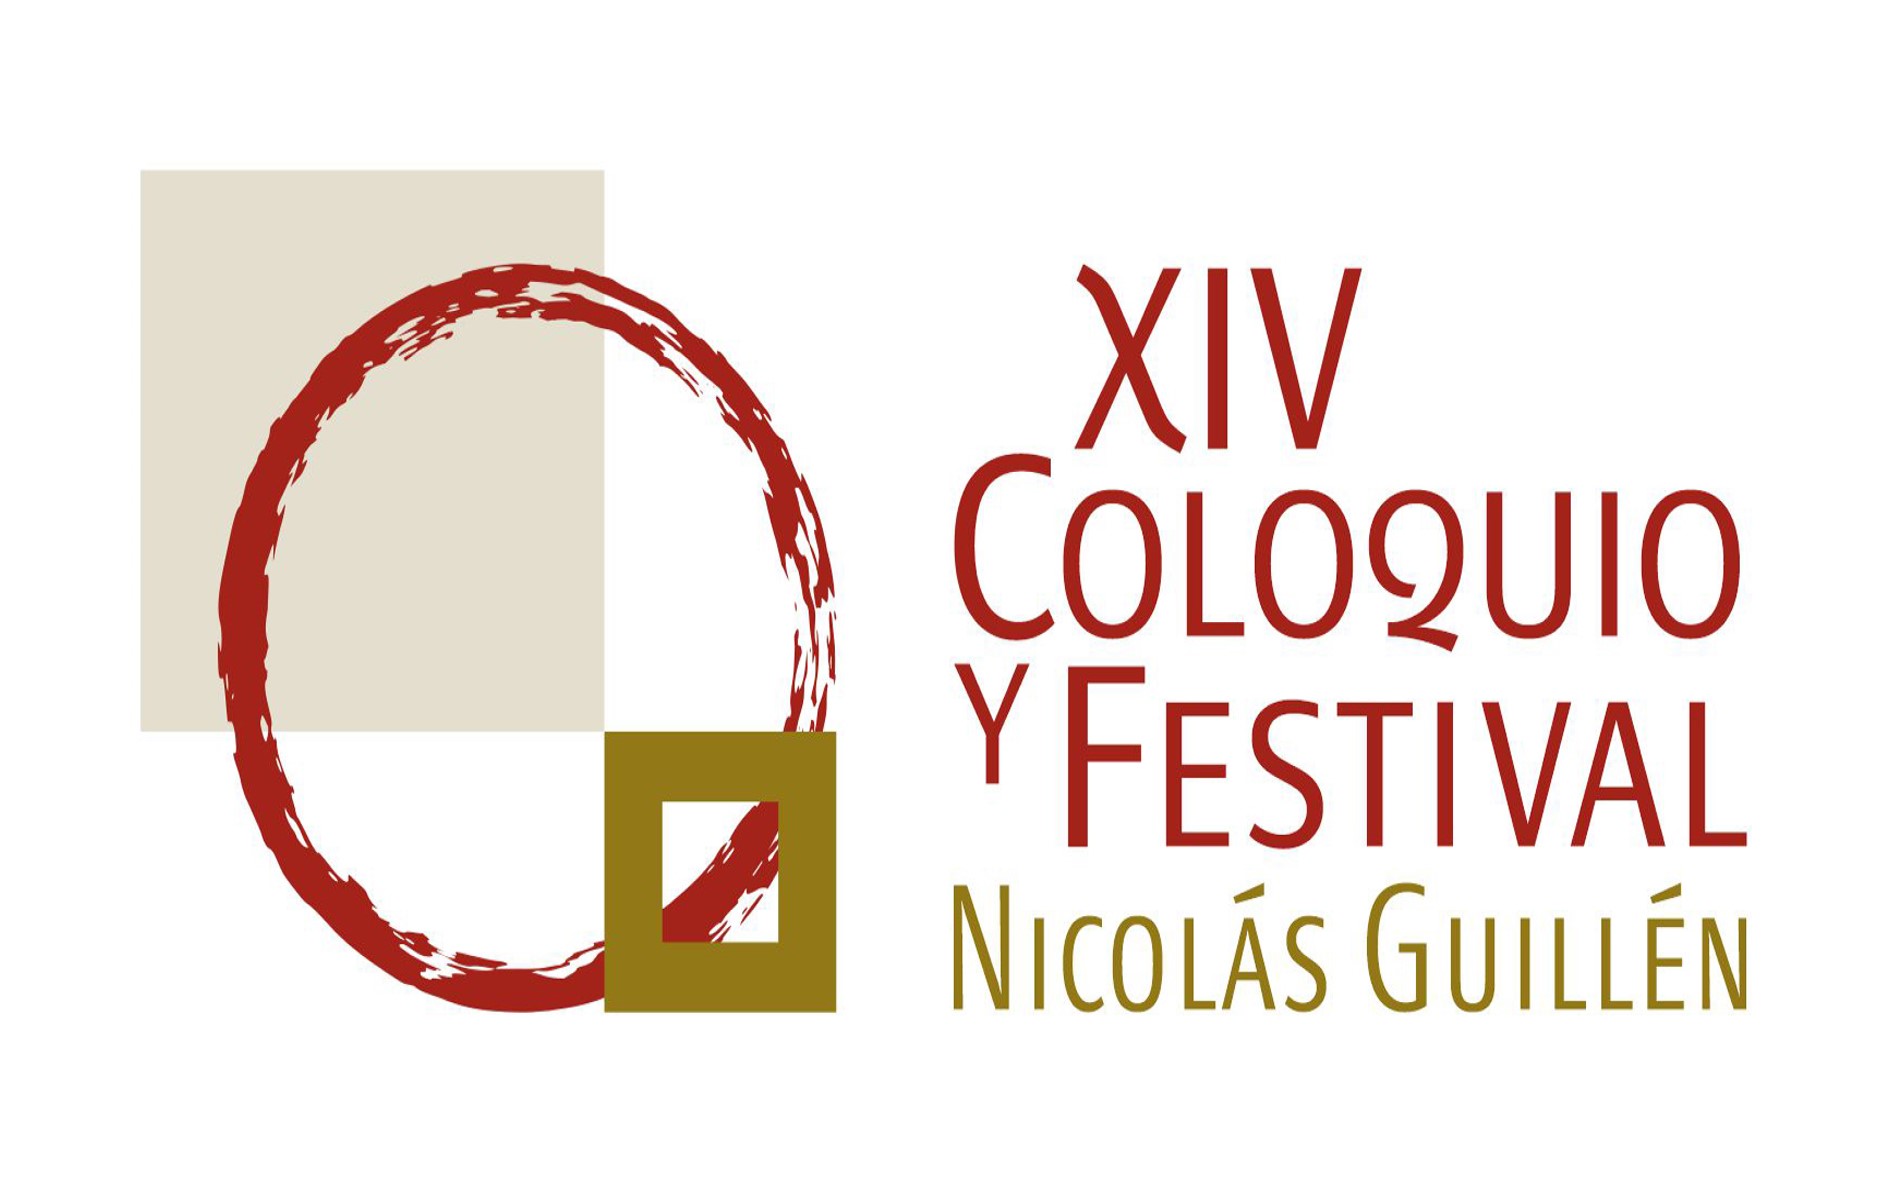 XIV Coloquio y Festival Nicolás Guillén